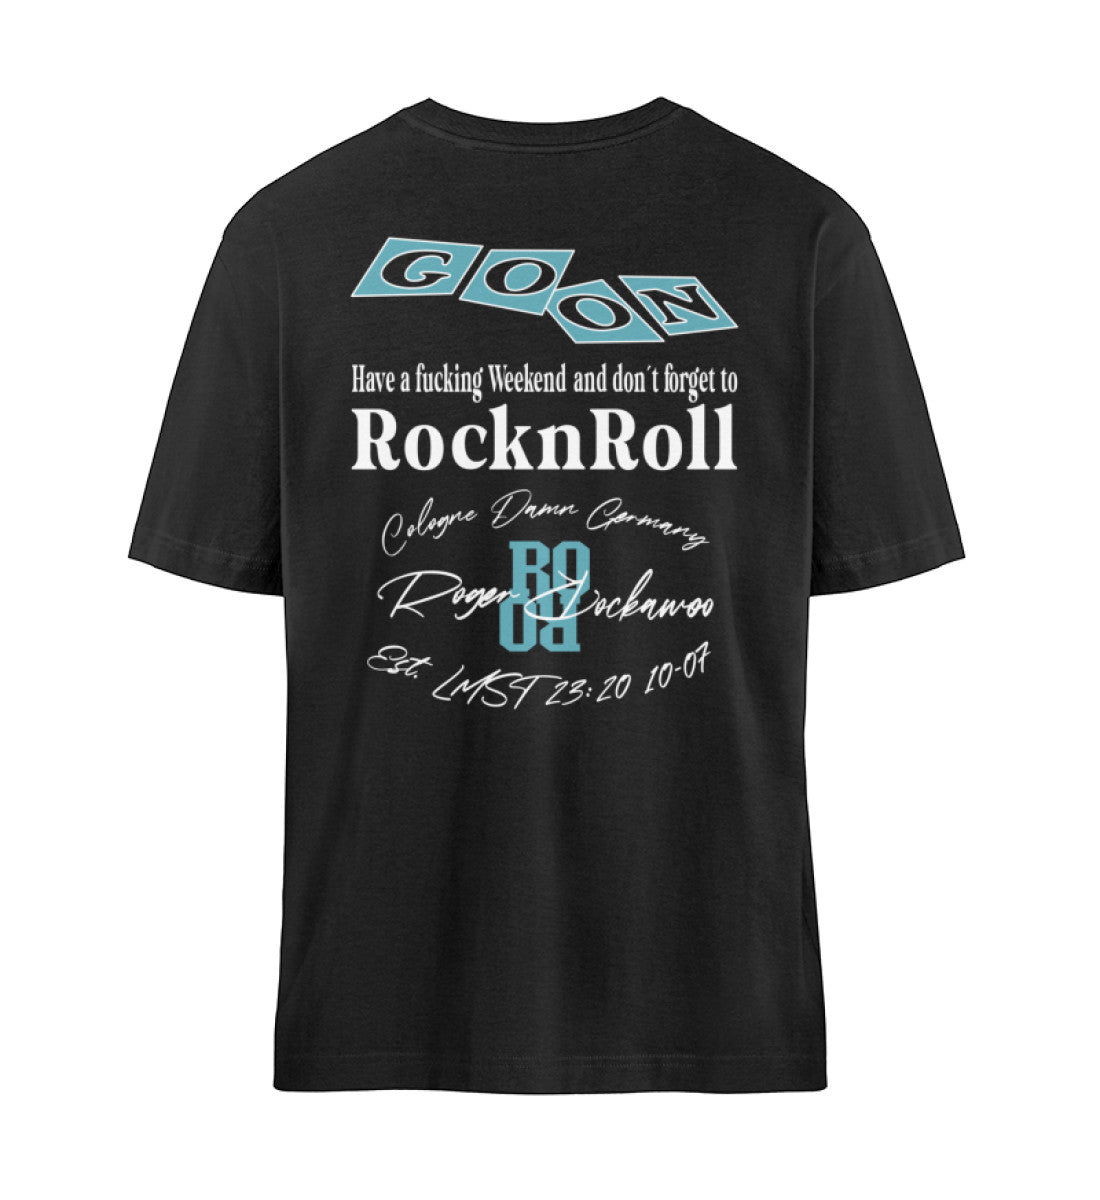 Schwarzes T-Shirt in Relaxed Fit mit rückseitiger Druck in weiß und türkis des Skateboard Go on Skate Designs von Roger Rockawoo Clothing